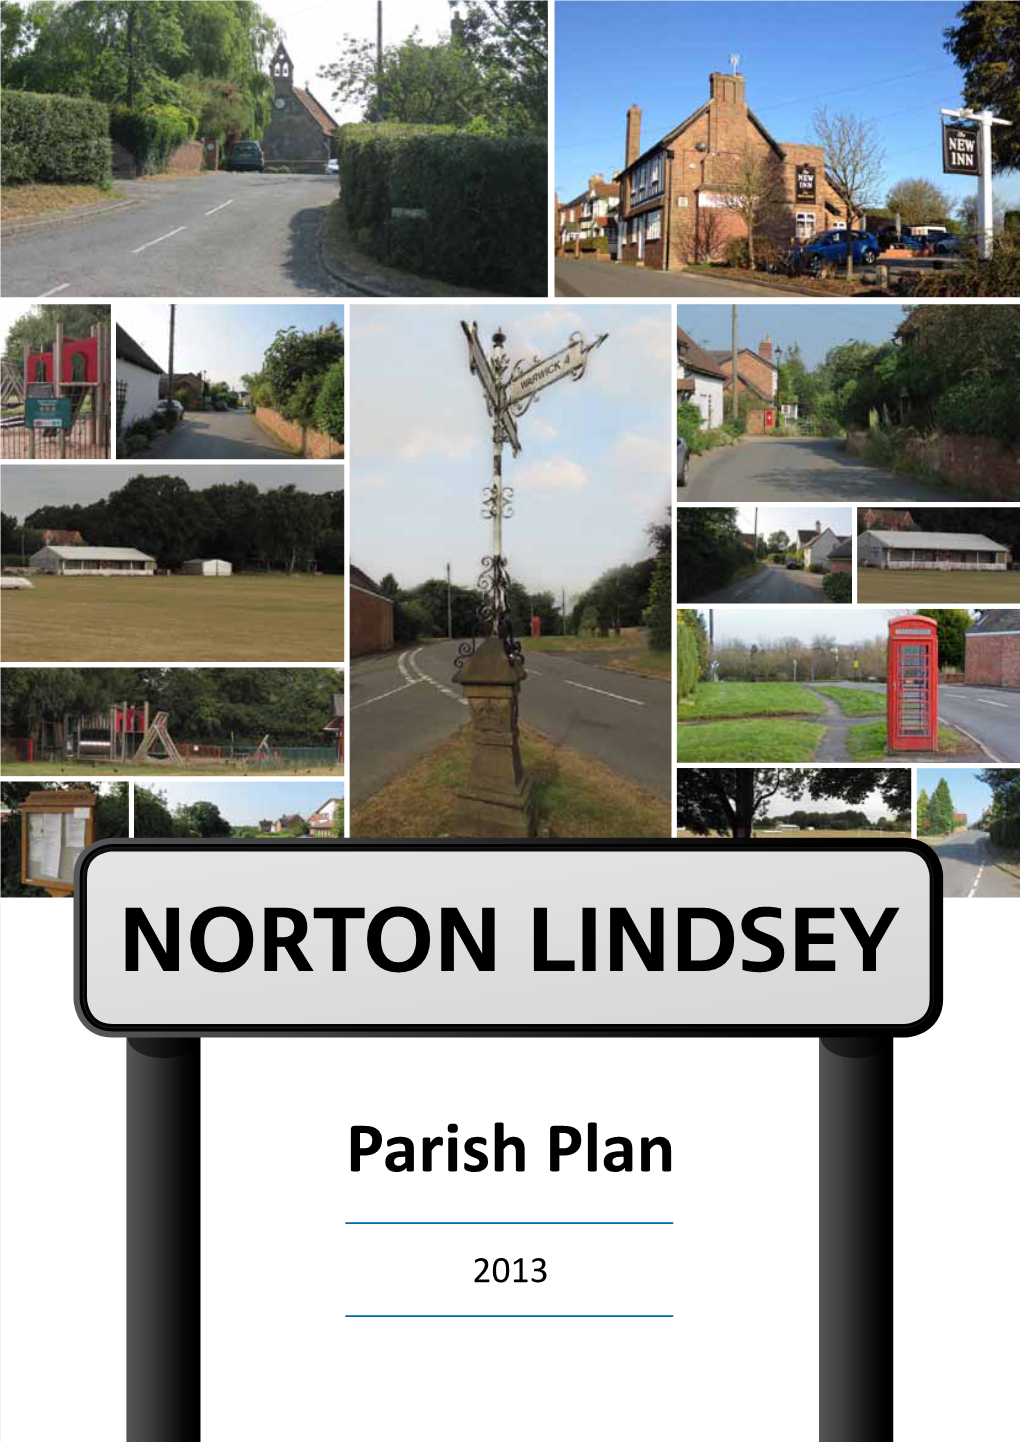 Norton Lindsey Parish Council